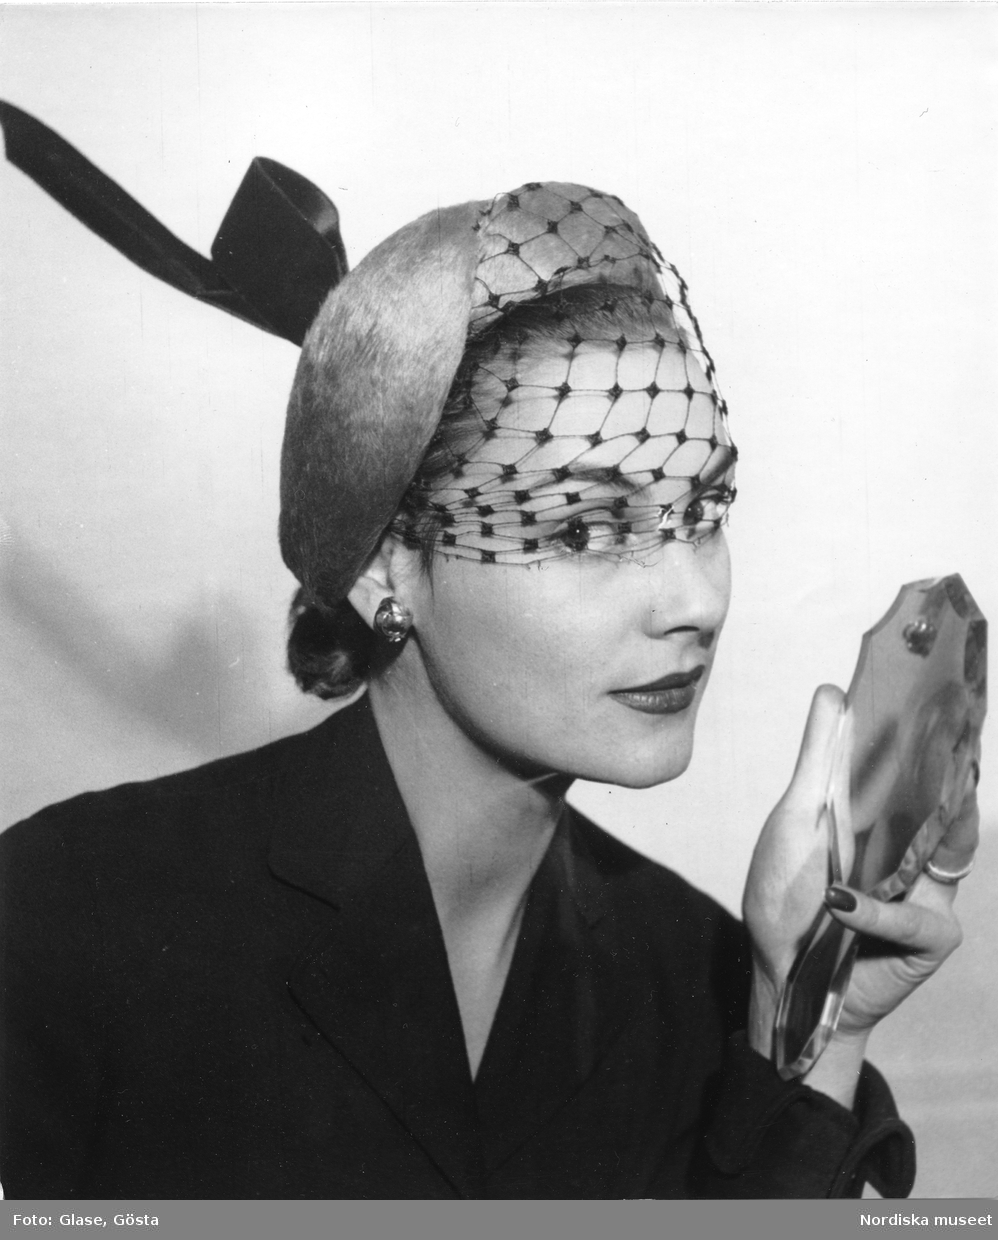 Dammode. Kvinna med hatt och handspegel.